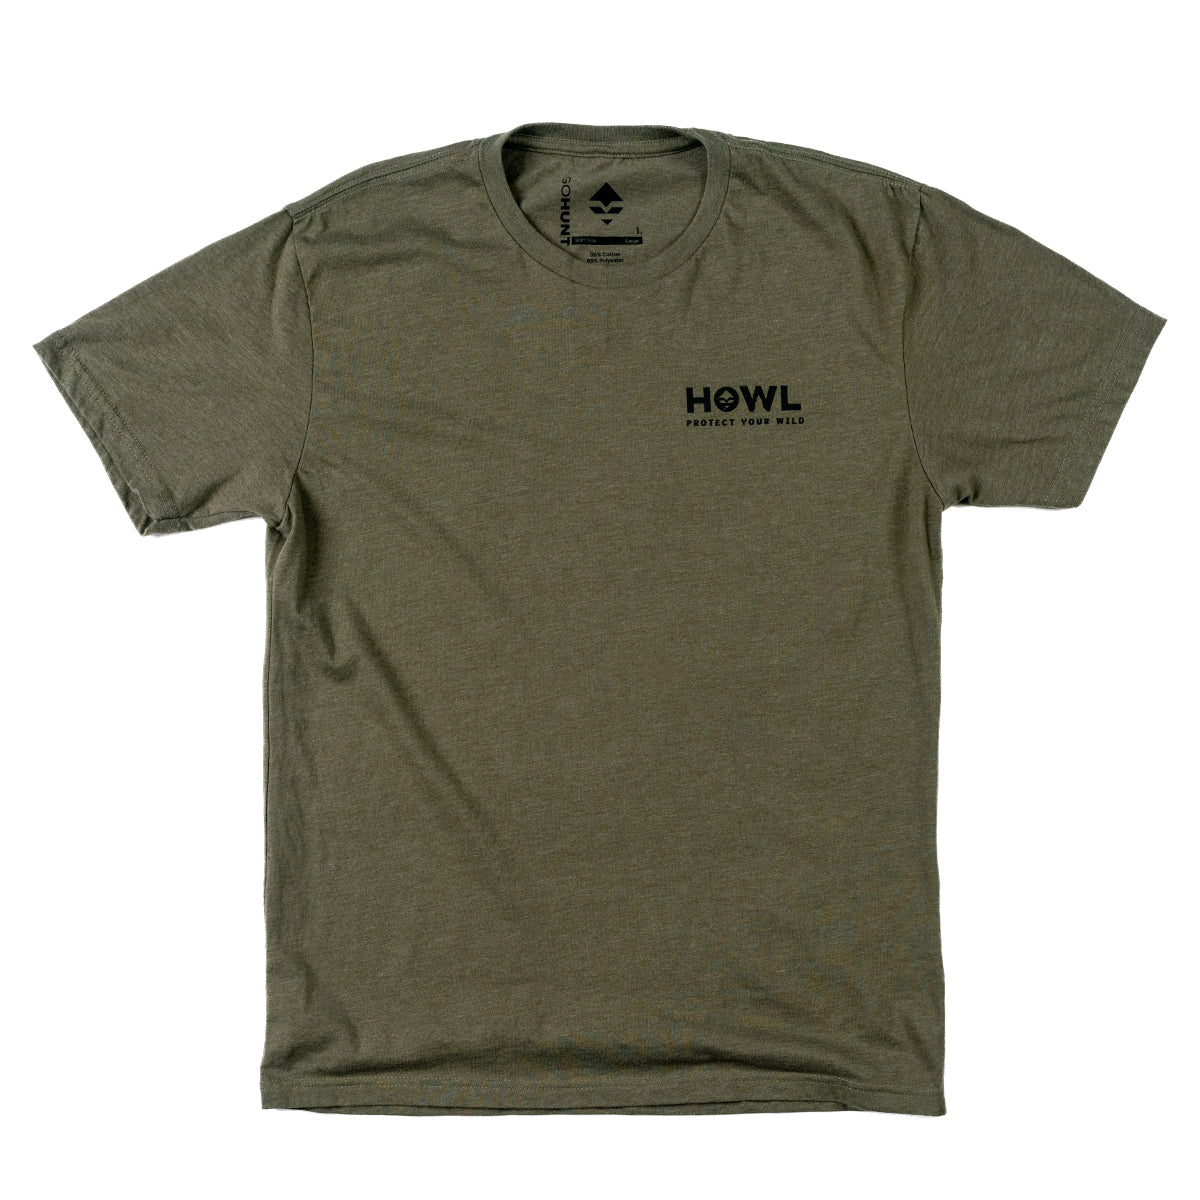 GOHUNT × Howl For Wildlife T-Shirt